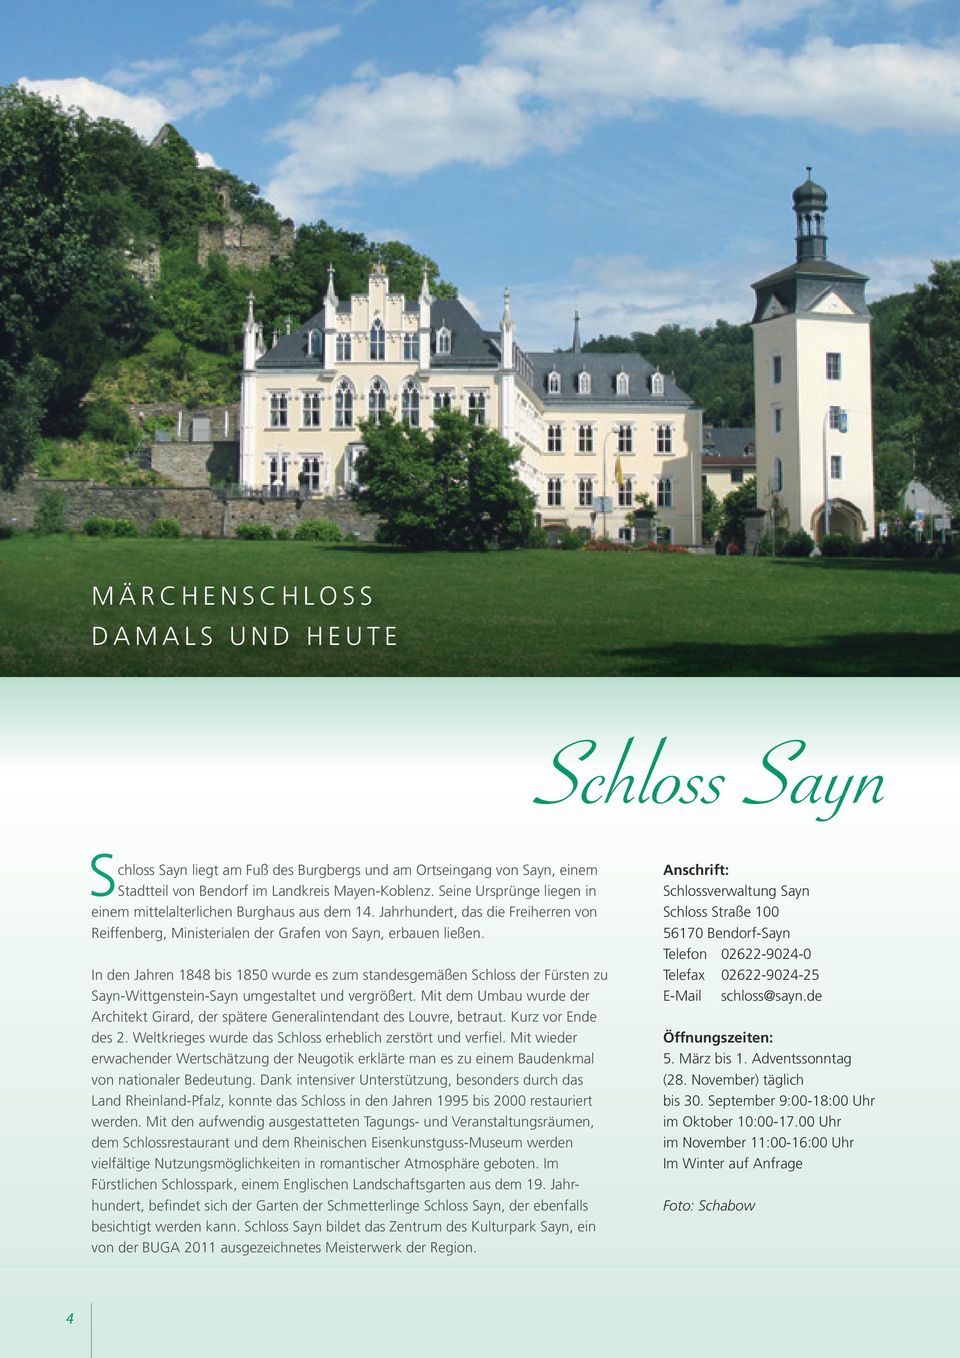 In den Jahren 1848 bis 1850 wurde es zum standesgemäßen Schloss der Fürsten zu Sayn-Wittgenstein-Sayn umgestaltet und vergrößert.